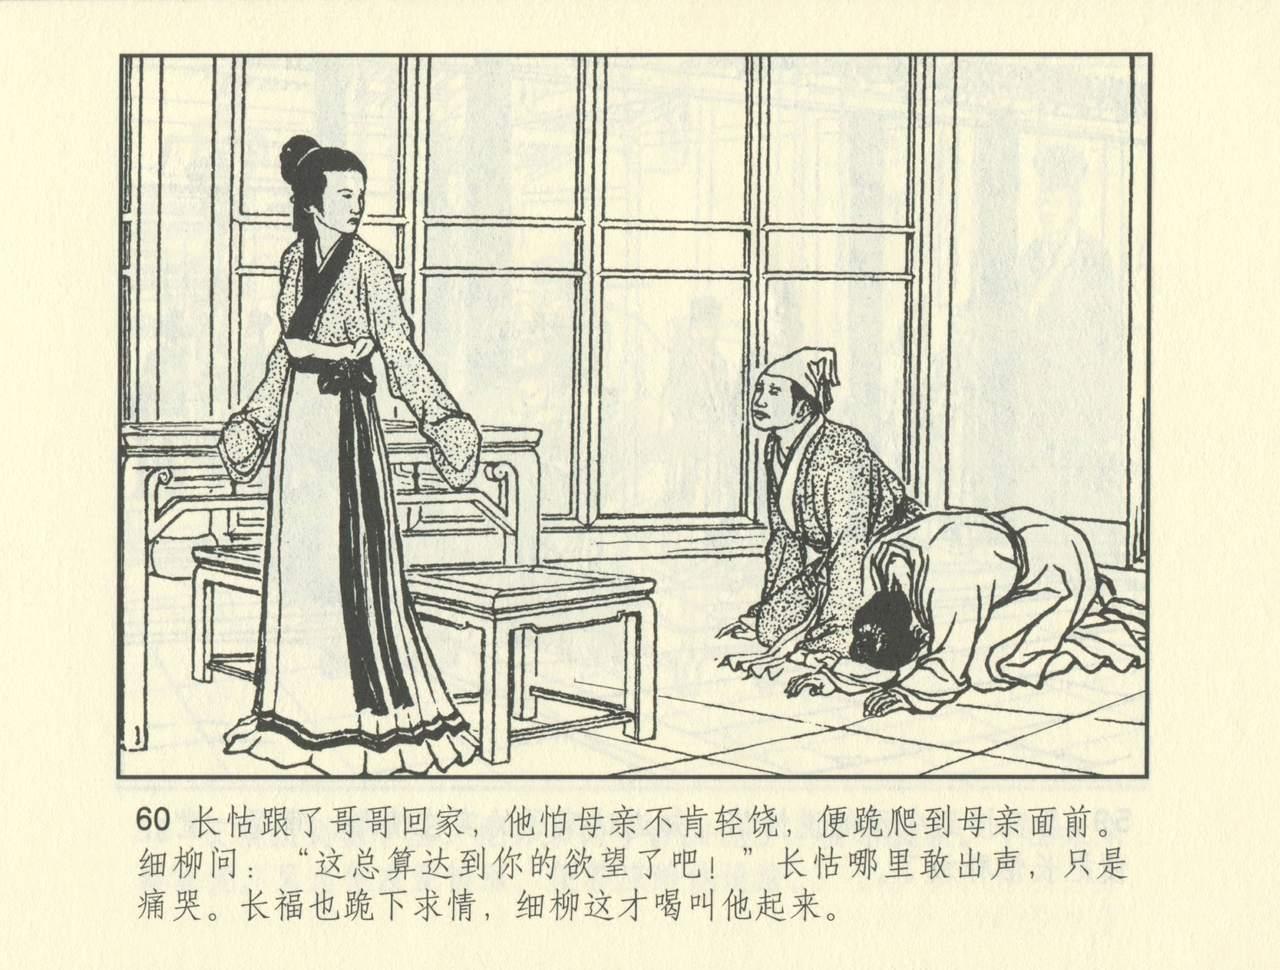 聊斋志异 张玮等绘 天津人民美术出版社 卷二十一 ~ 三十 532